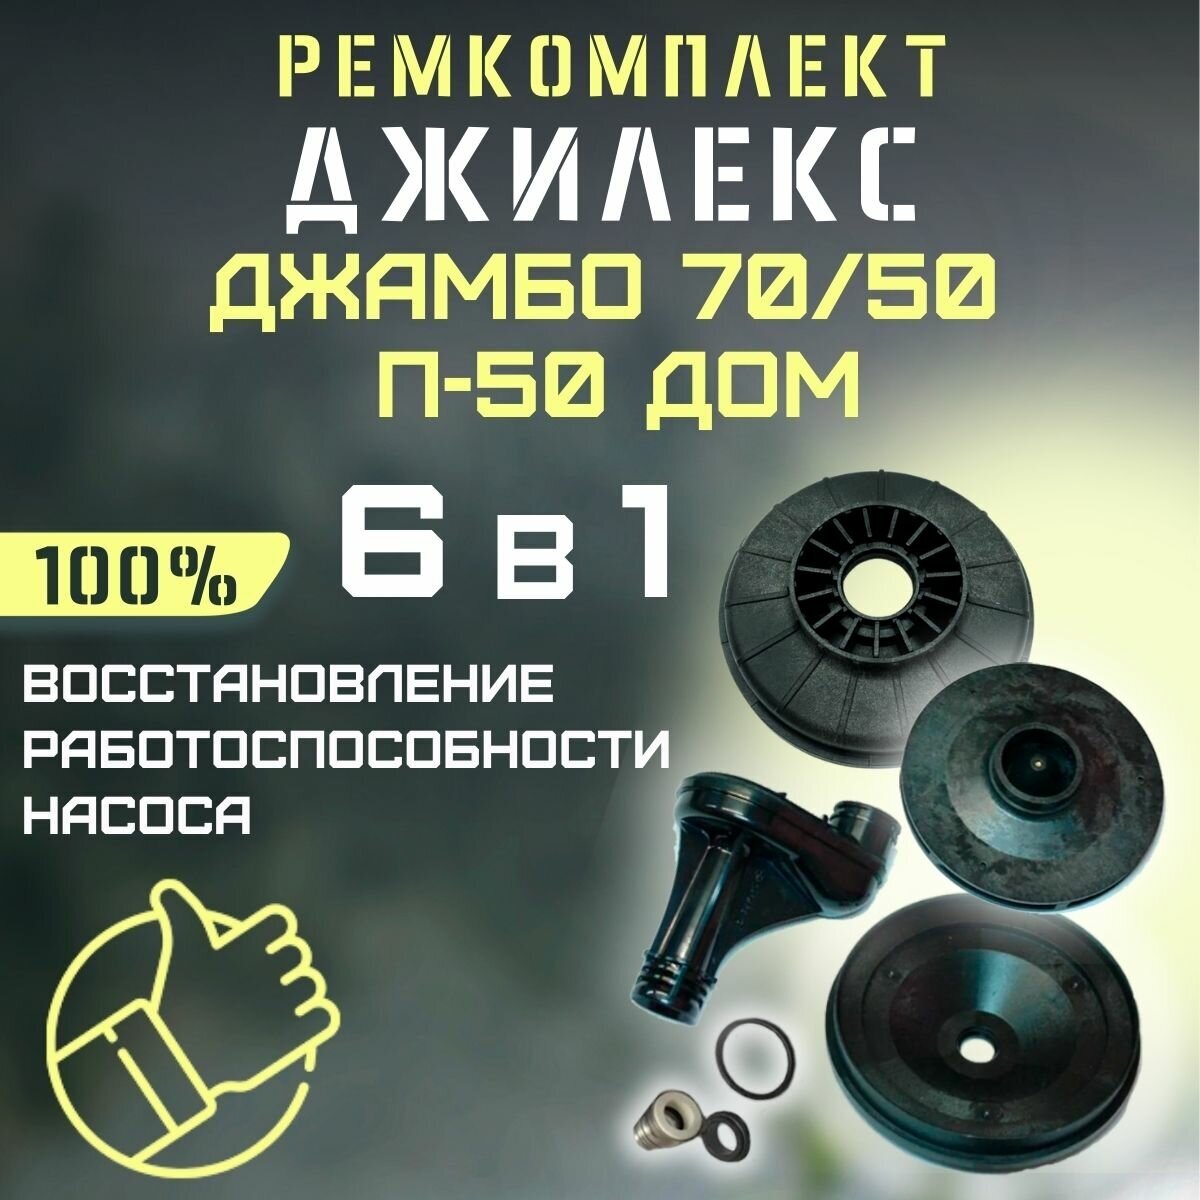 Ремкомплект Джилекс Джамбо 70/50 П-50 ДОМ (RMKDZH7050P50d)